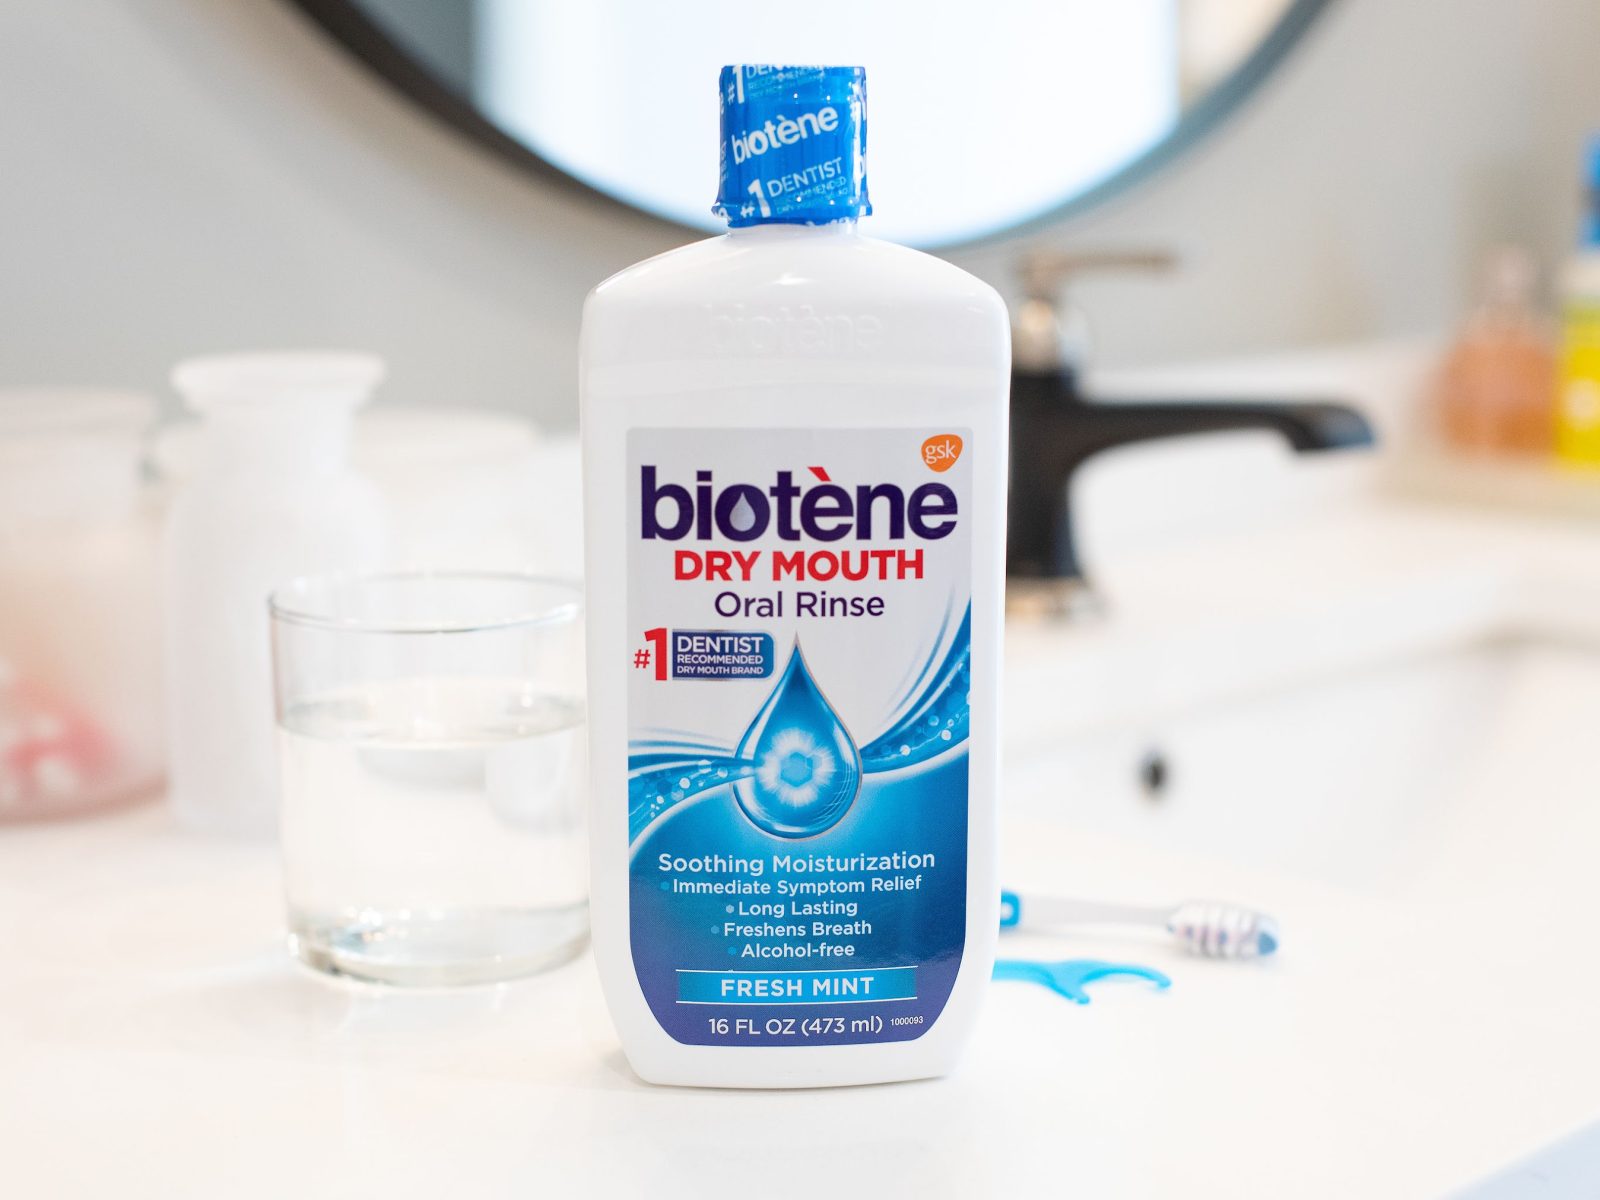 Biotene Products As Low As $3.09 At Kroger (Regular Price $6.49)